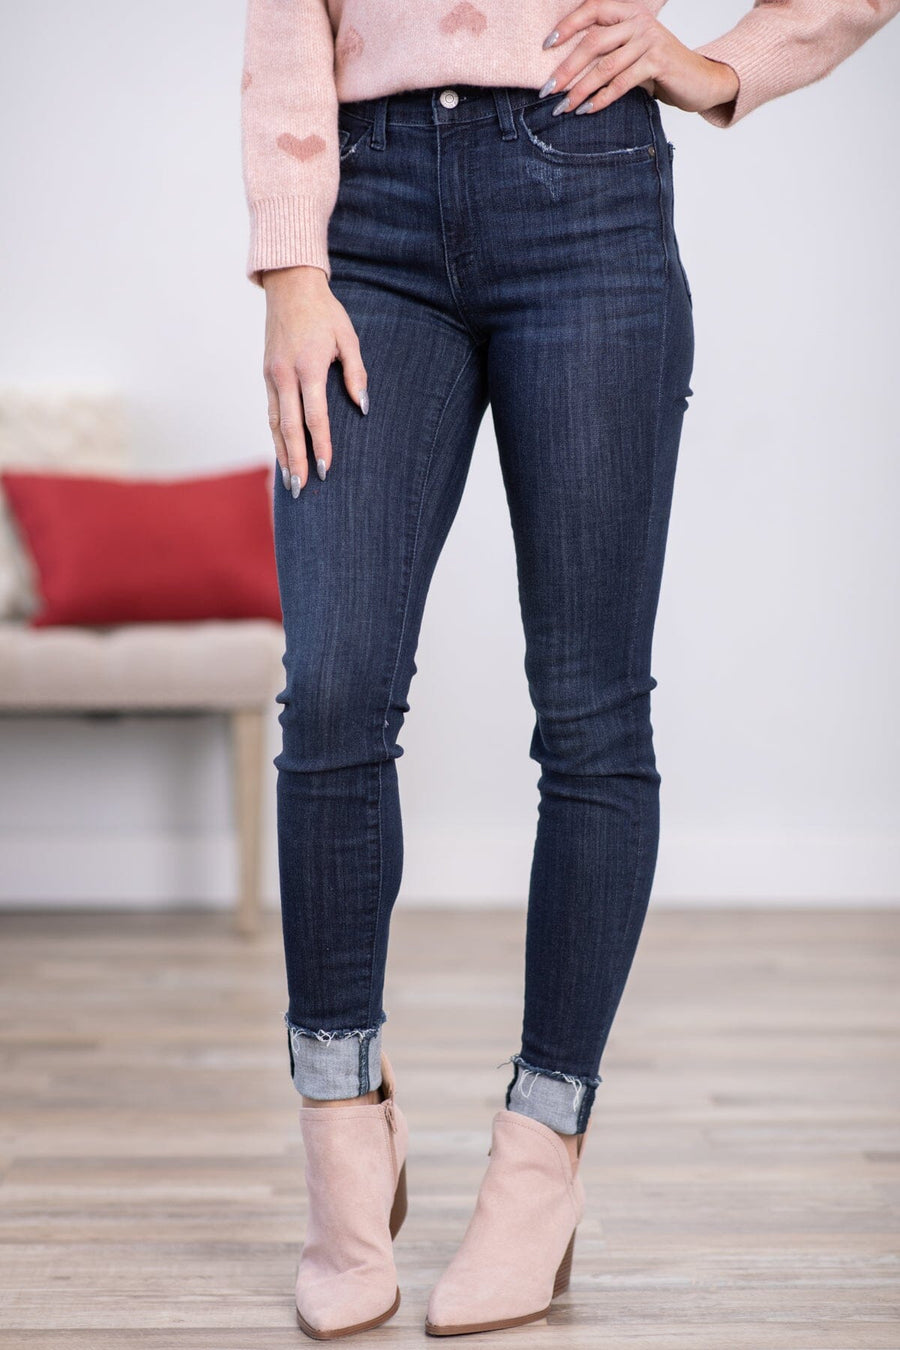 Judy Blue Dark Wash Cuffed Skinny Jeans - Filly Flair